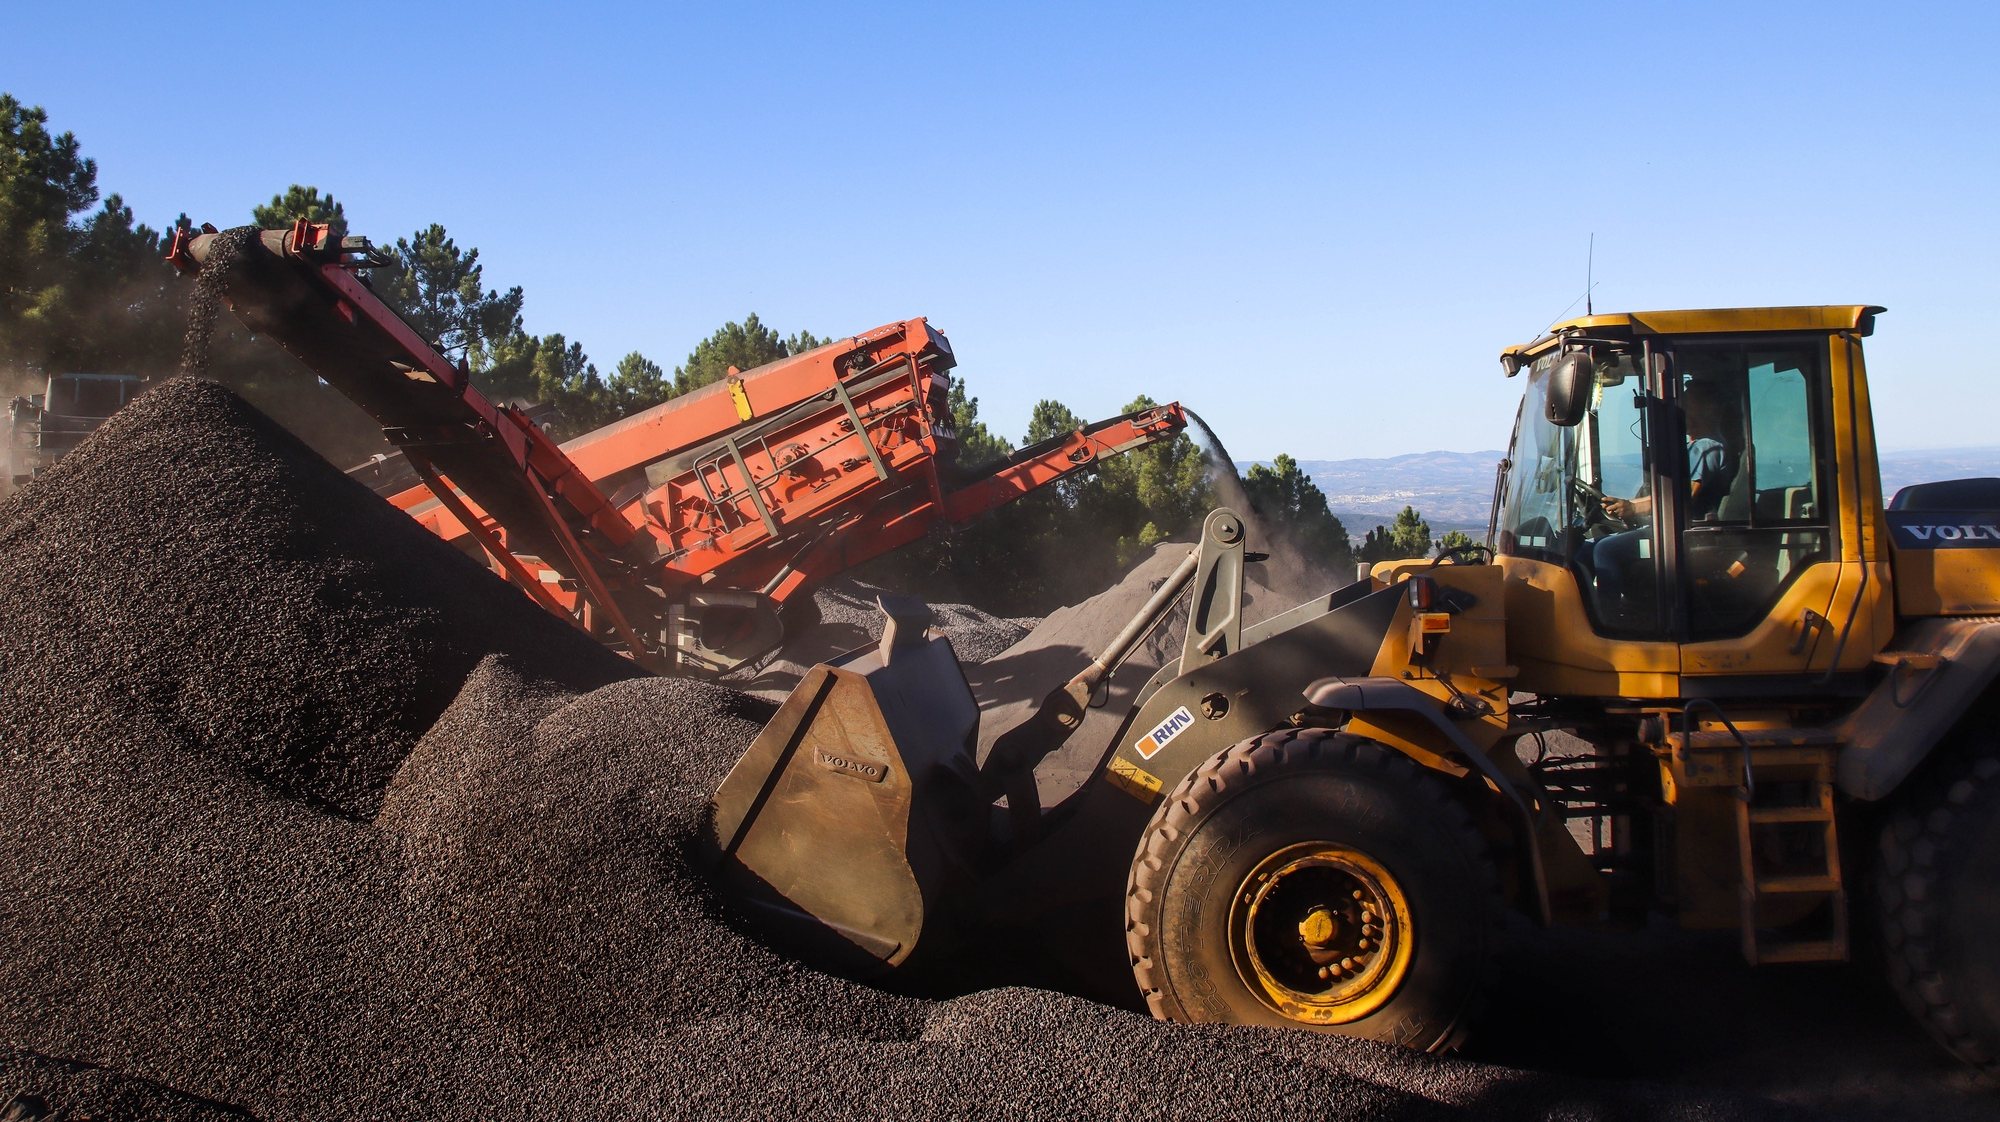 A concessionária das minas de Moncorvo, Aethel Mining Limited, deu início a extração de duas mil toneladas diárias de agregado de ferro de alta densidade, certificado, provenientes do depósito da Mua, 12 de outubro de 2021. O projeto mineiro instalado no cabeço da Mua, no concelho de Torre de Moncorvo, no distrito de Bragança, foi retomado no dia 13 março de 2020, após 38 anos de abandono, estando previsto um investimento de 550 milhões de euros para os próximos 60 anos. ( ACOMPANHA TEXTO DO DIA 13 DE OUTUBRO DE 2021). FOTO FRANCISCO PINTO/LUSA